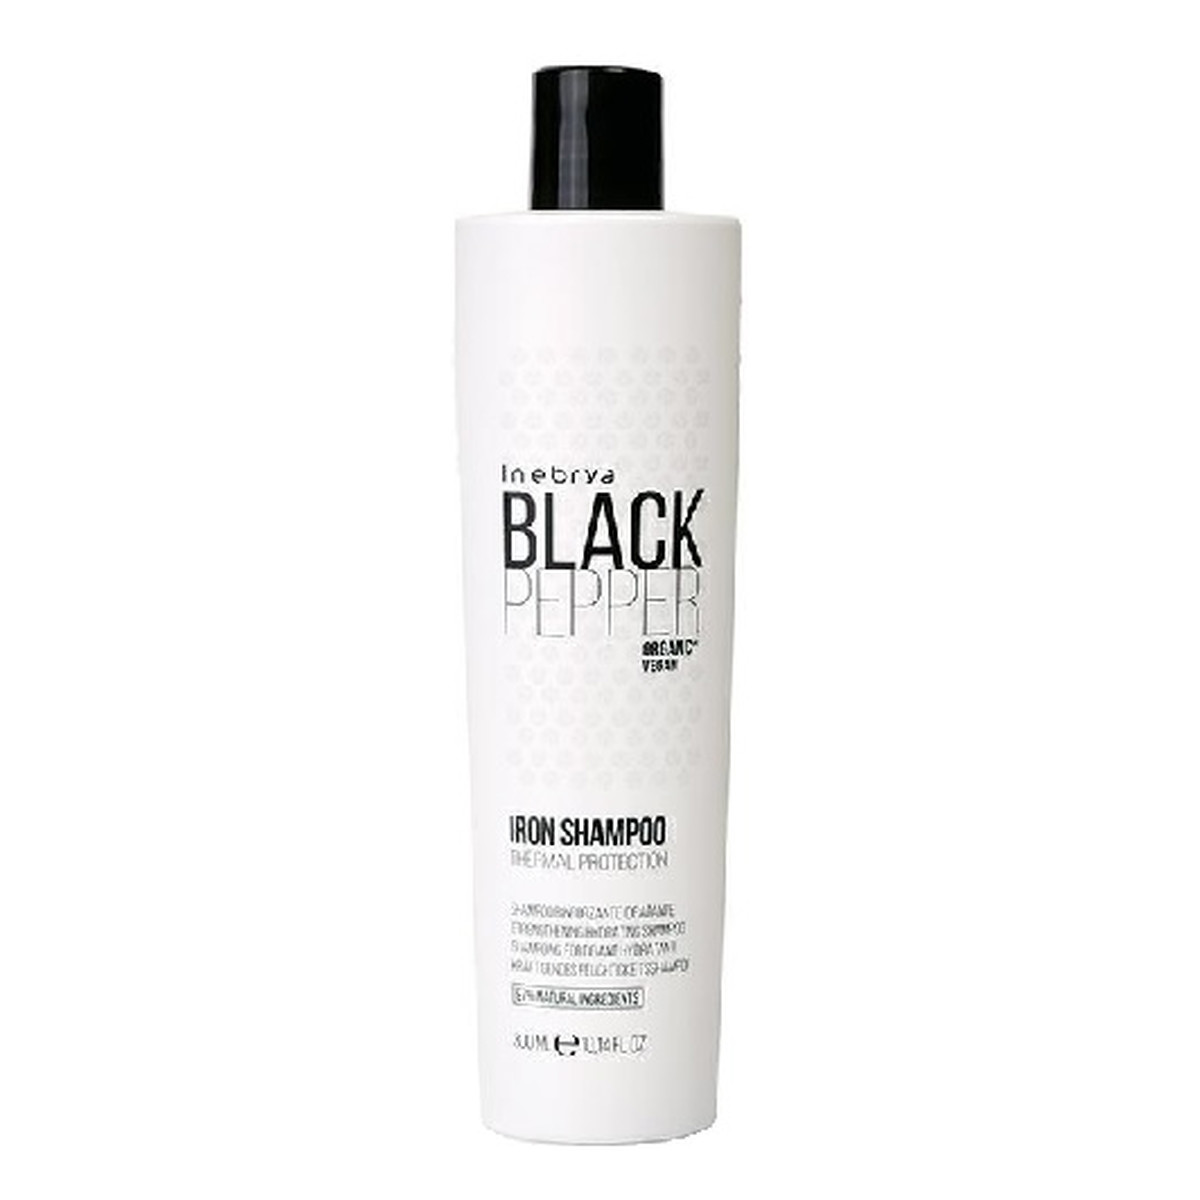 Inebrya Black Pepper Iron Shampoo Wzmacniający Szampon Nawilżający do Włosów 300ml